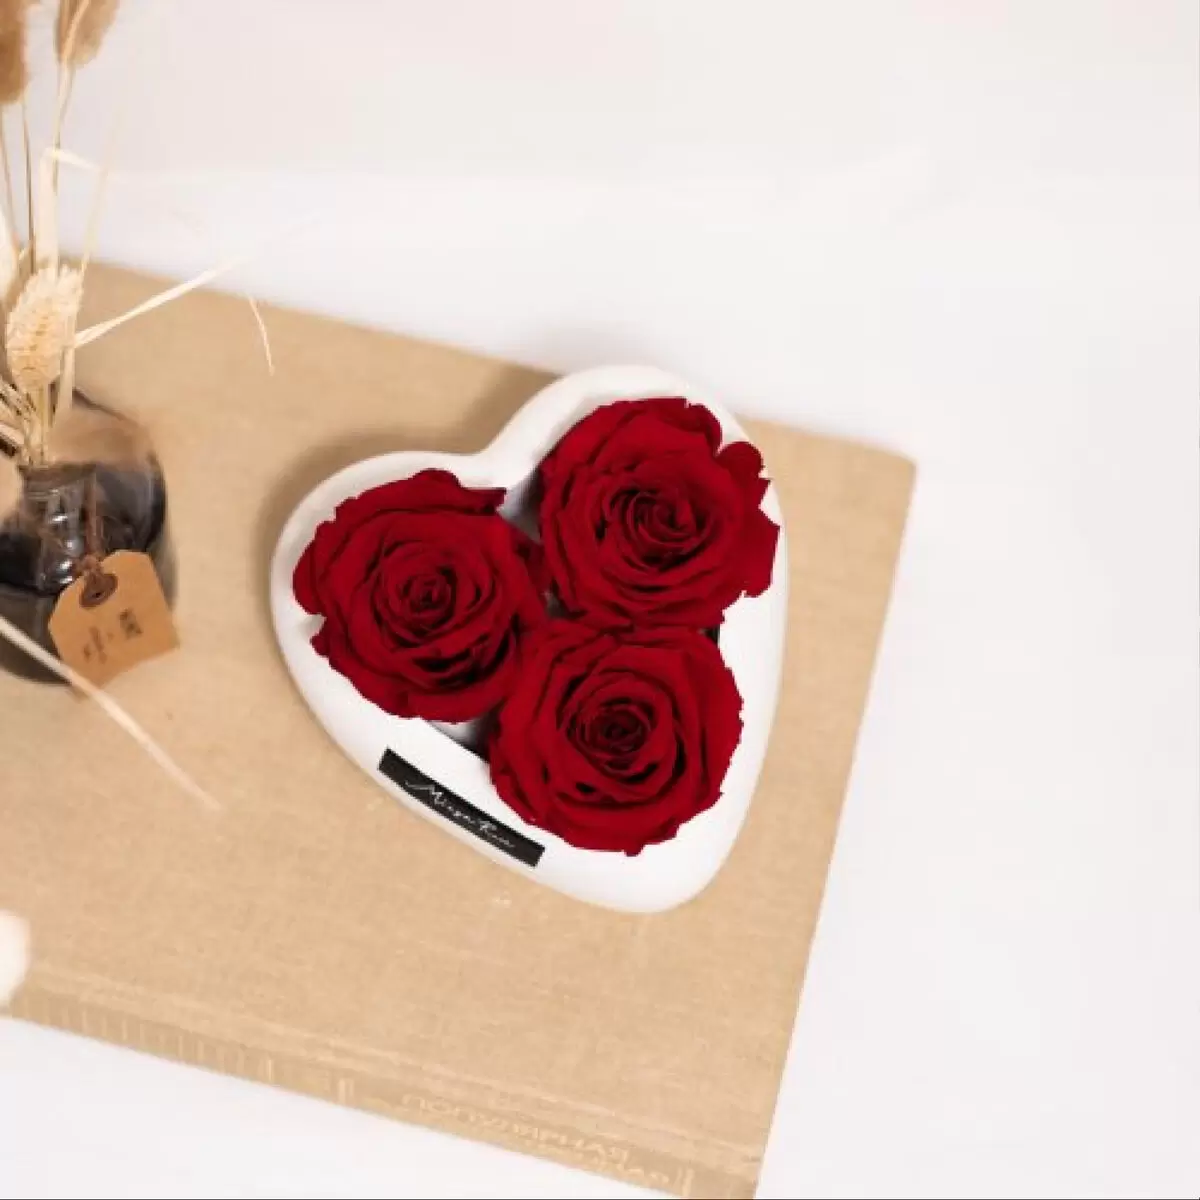 Cuore 3 rose vere stabilizzate - idea regalo romantica 